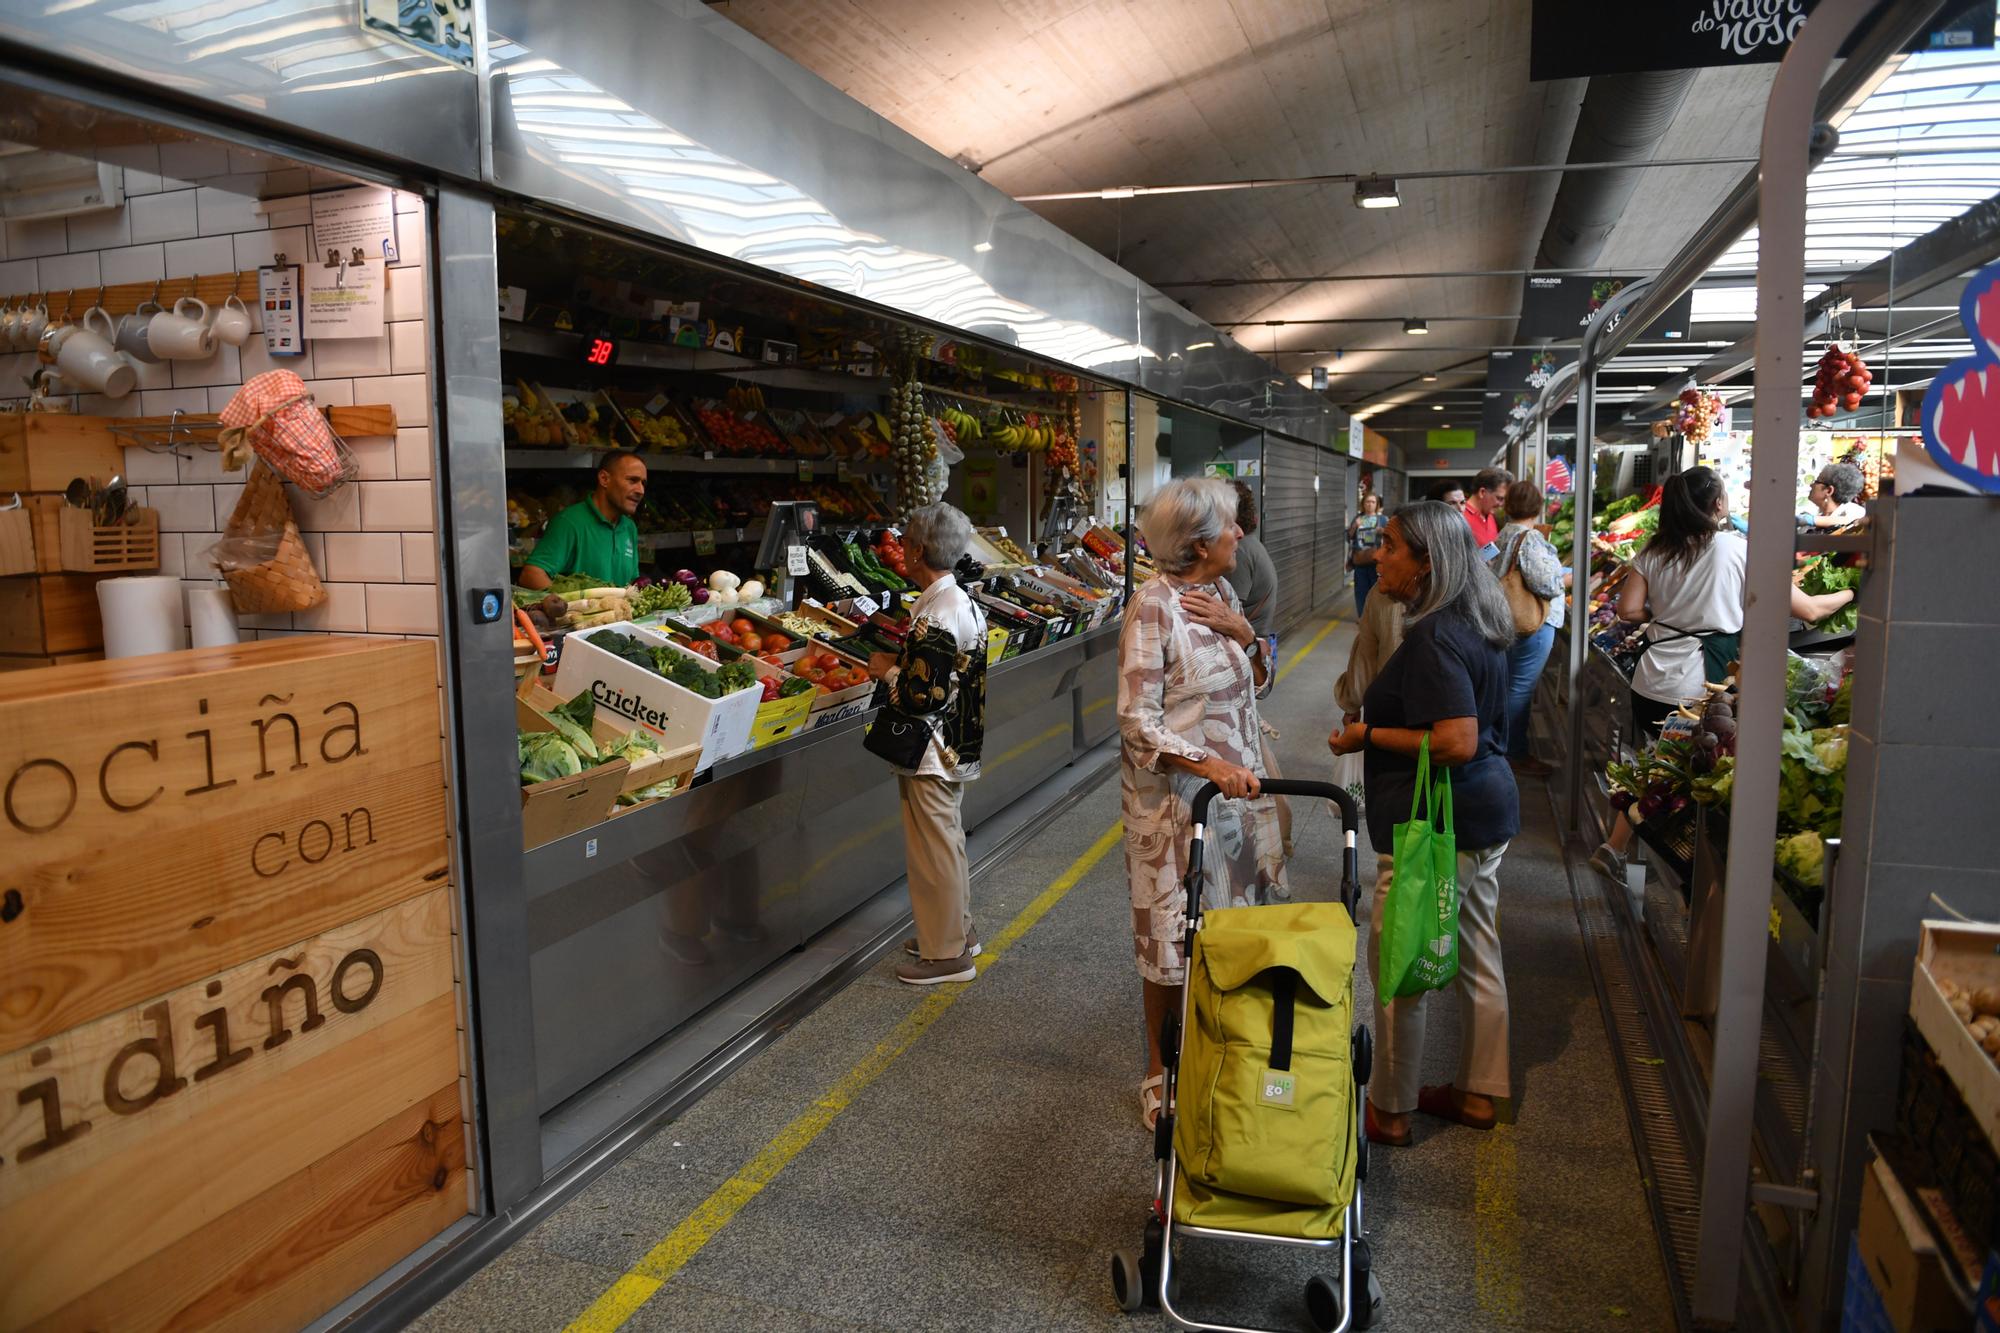 La flota del cerco promociona su producto en el mercado de la plaza de Lugo